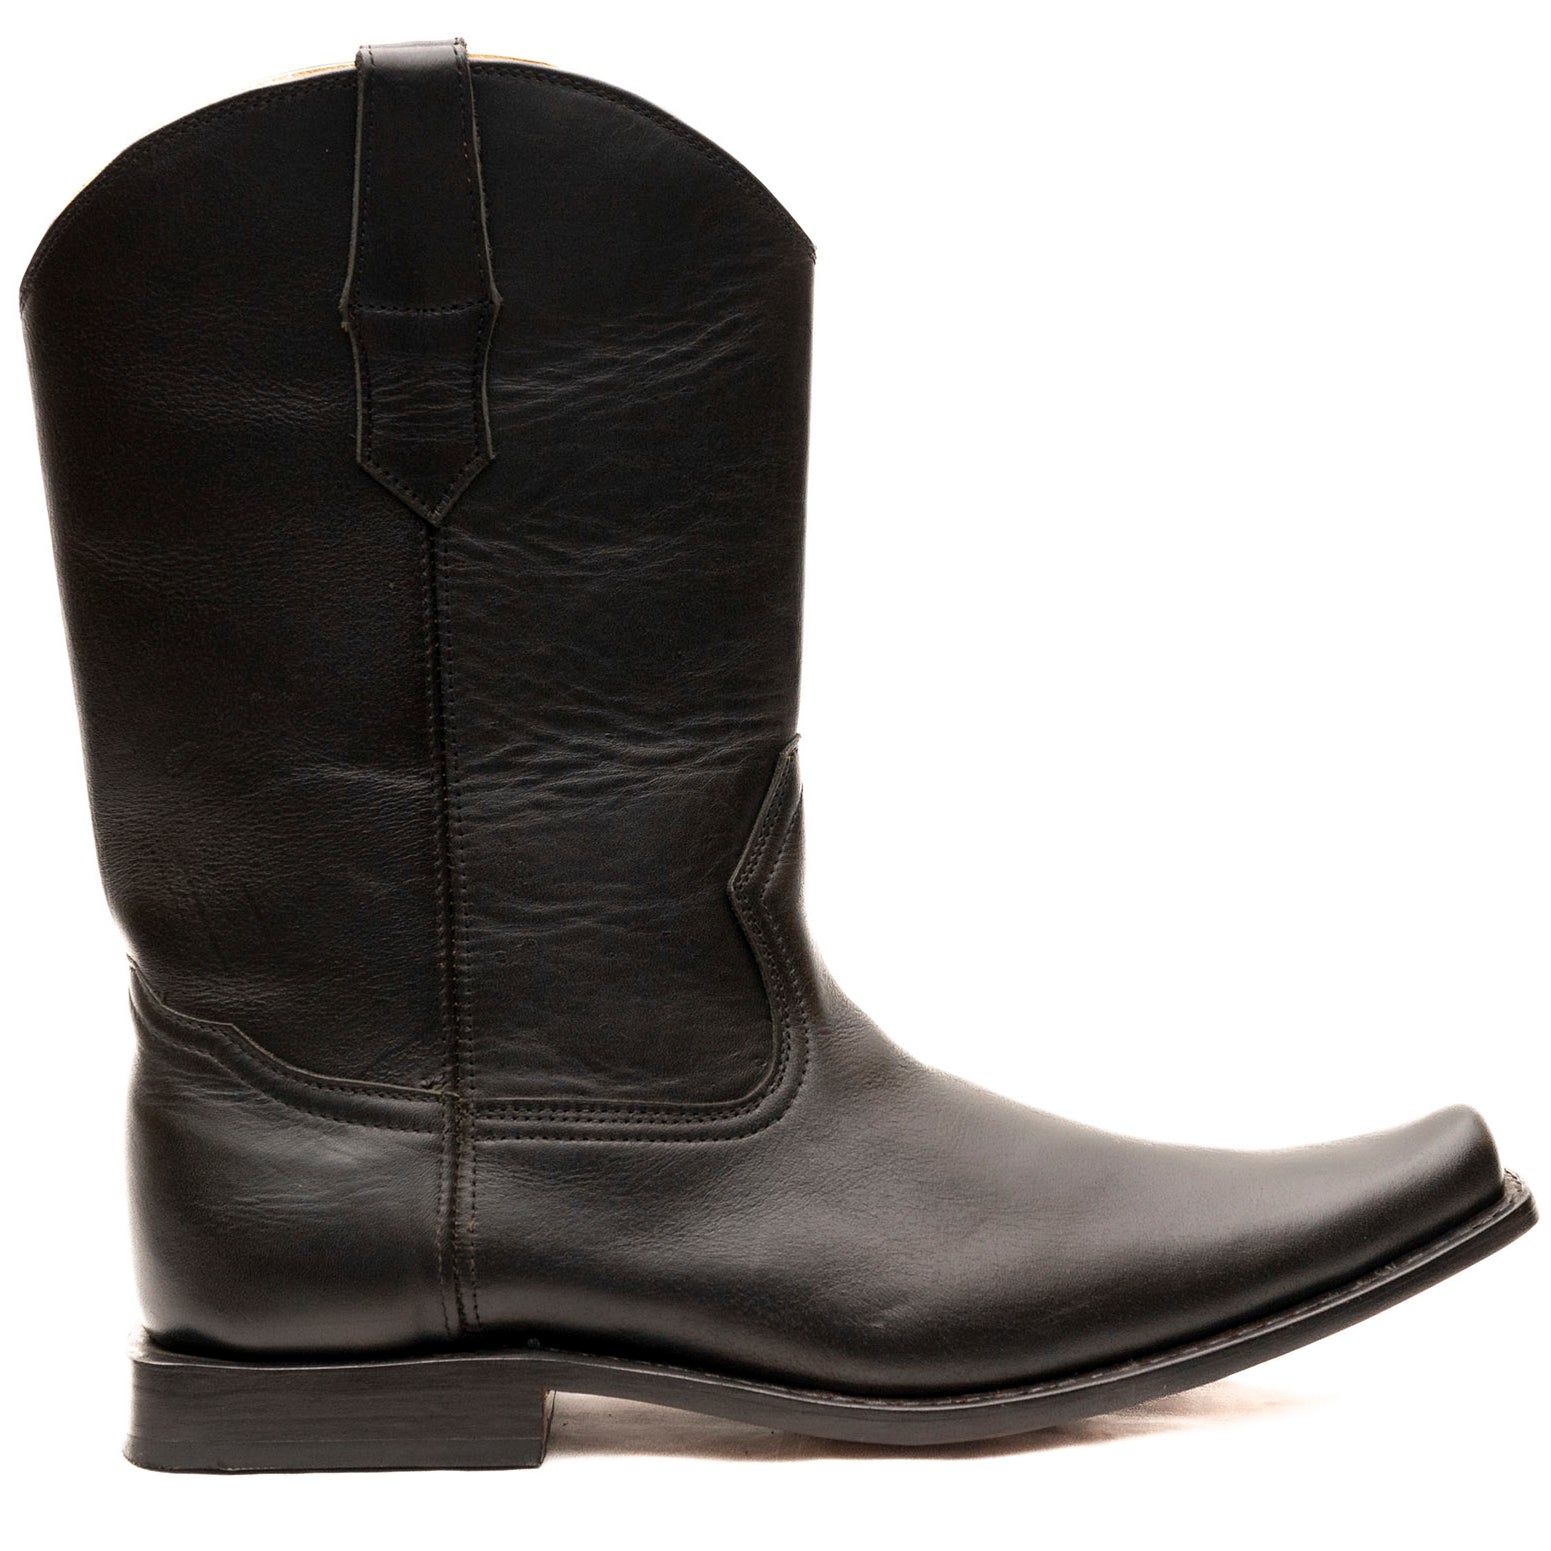 The slanted western boot heel